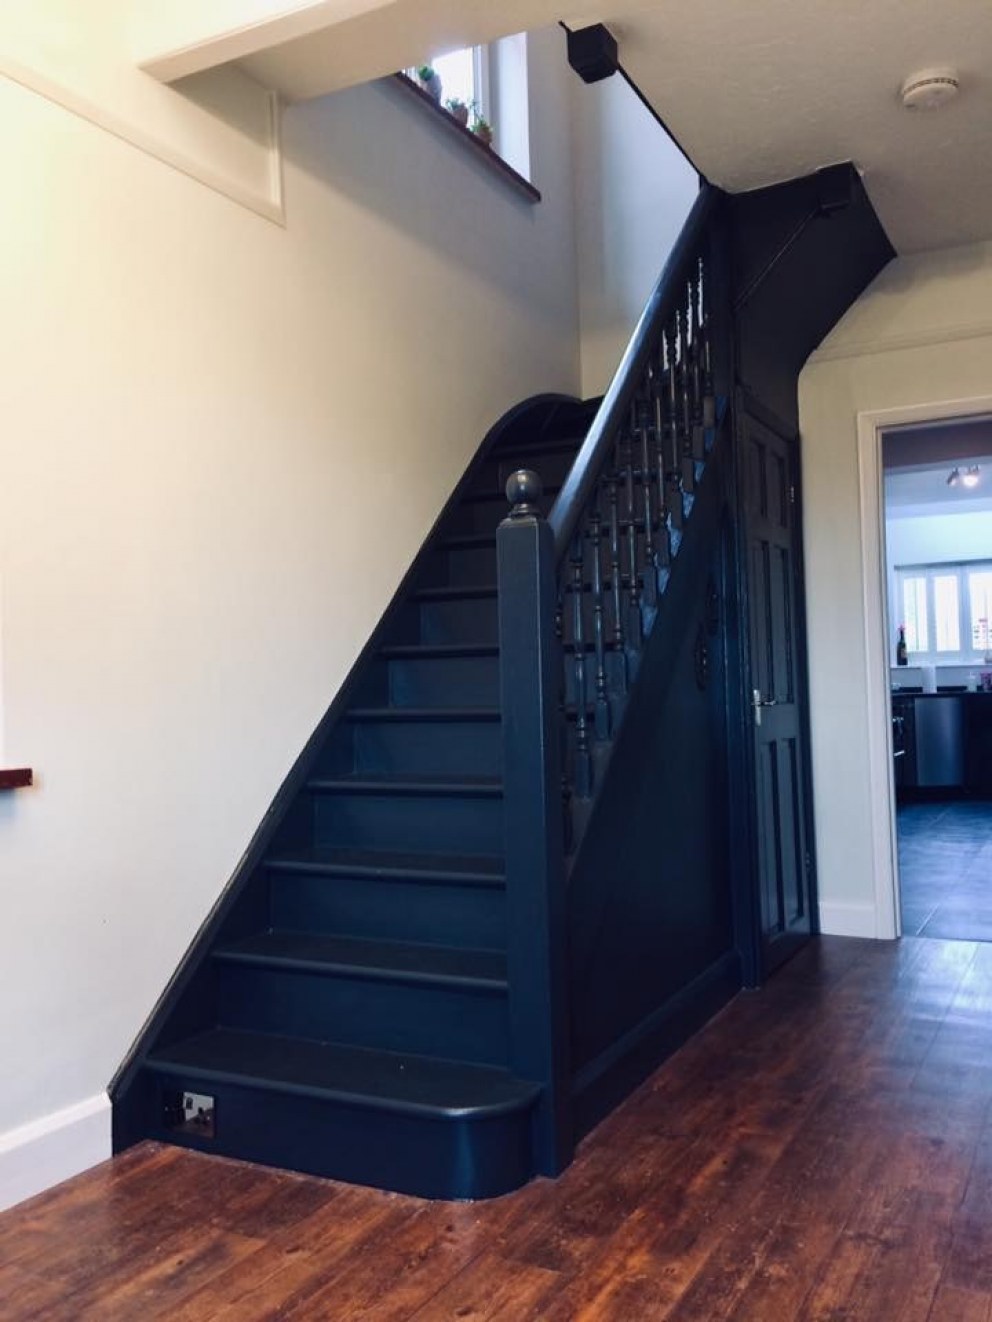 Statement Period Hallway | Stairs in Black | Interior Designers